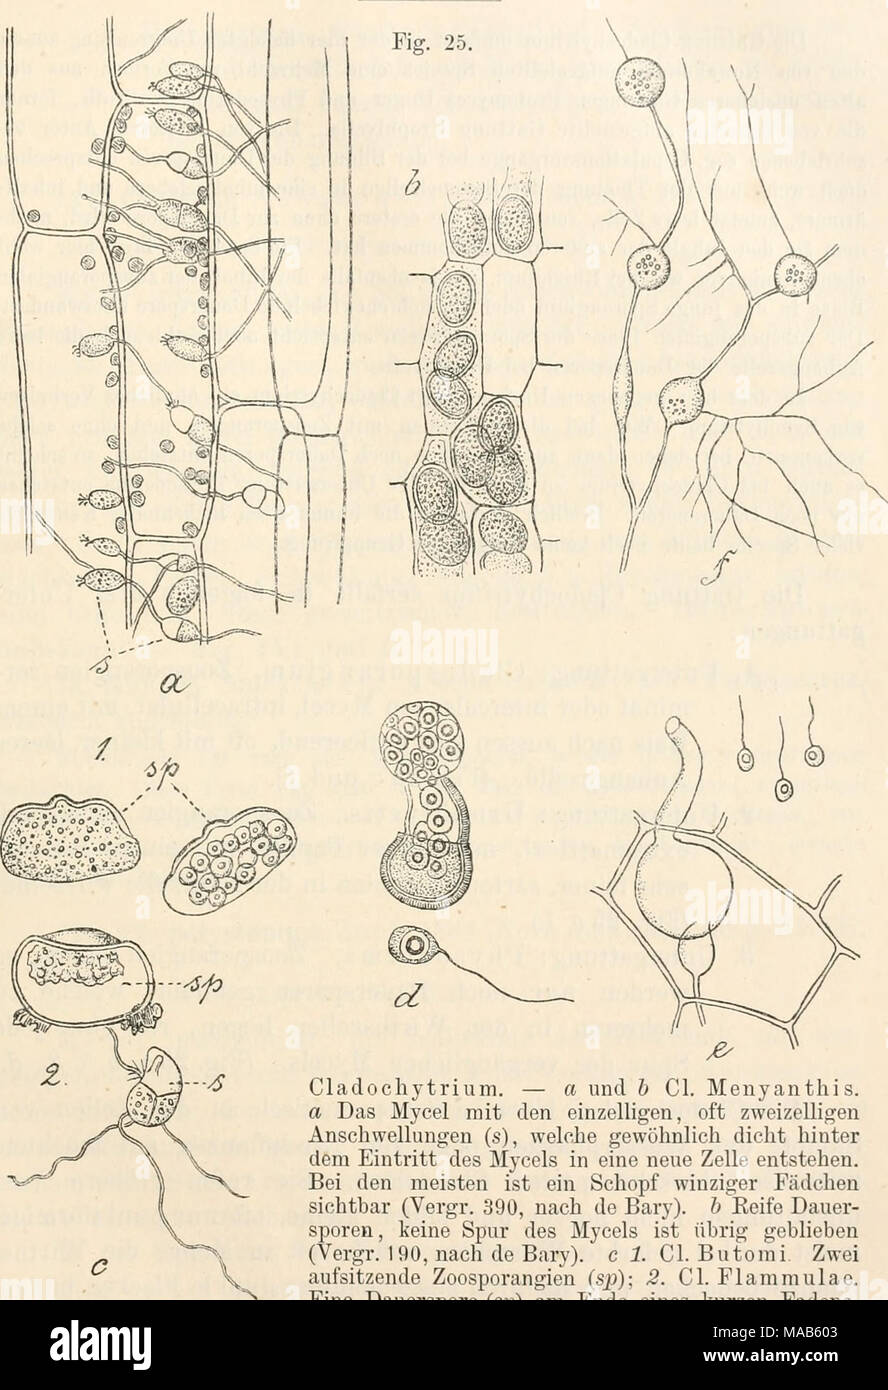 . Dr. L. Rabenhorst's Kryptogamen-Flora von Deutschland, Oesterreich und der Schweiz . Cladochytrium. — a und b Cl. Menyanthis. a Das Mycel mit den einzelligen, oft zweizeiligen Anschwellungen (s), welche gewöhnlich dicht hinter dem Eintritt des Mycels in eine neue Zelle entstehen. Bei den meisten ist ein Schopf winziger Fädchen sichtbar (Vergr. 390, nach de Bary). b Eeife Dauer- sporen , keine Spur des Mycels ist übrig geblieben (Vergr. 190, nach de Bary). c 1. Cl. Butonii. Zwei aufsitzende Zoosporangien (sjj); 2. Cl. Plammulae. Eine Dauerspore (sjj) am Ende eines kurzen Fadens, der von der d Stock Photo